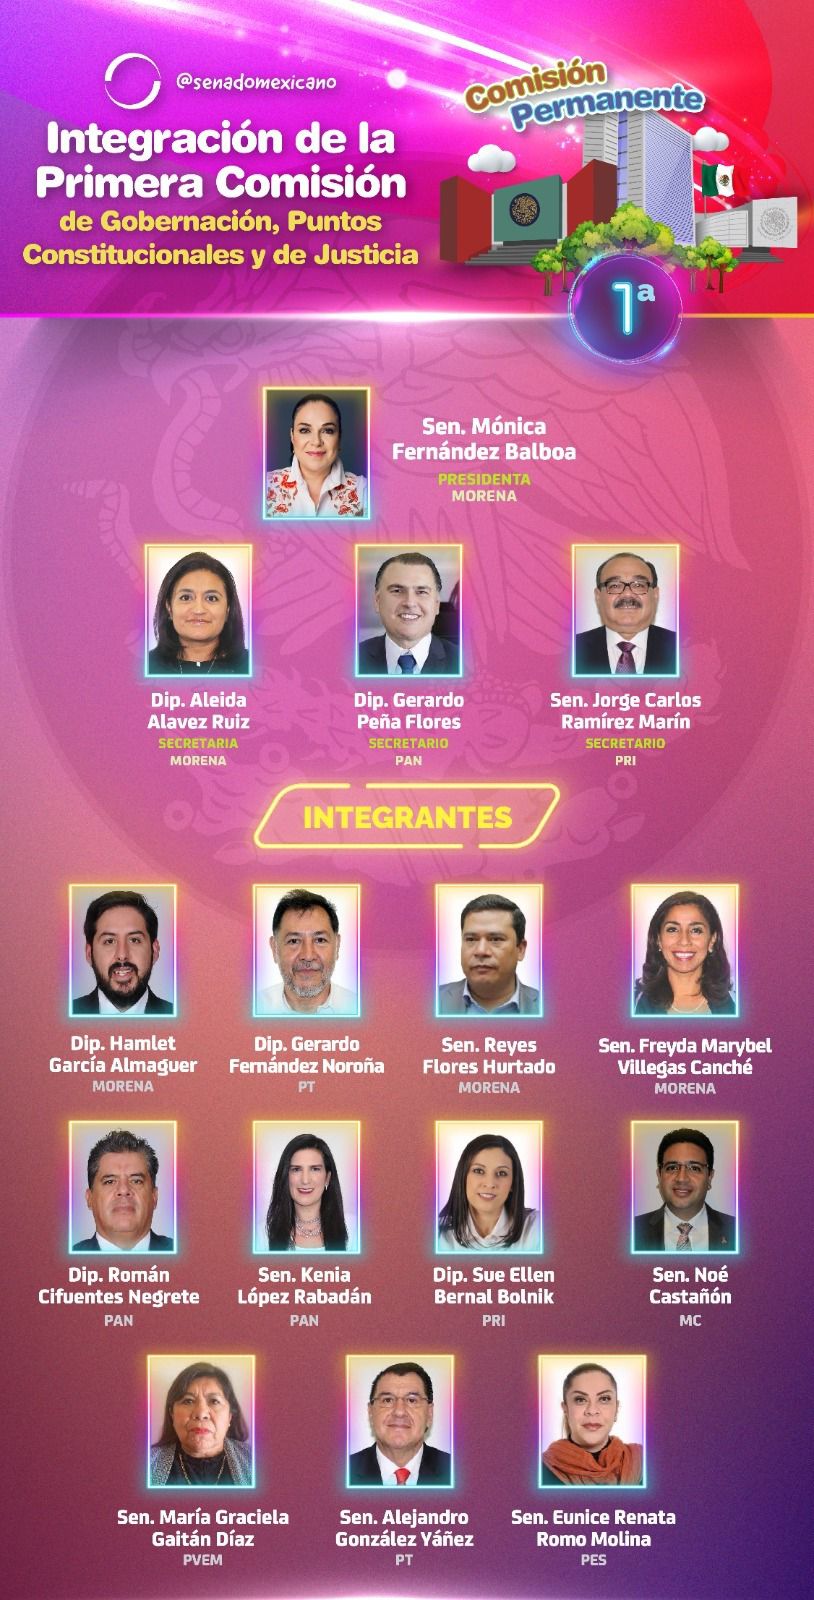 Senado de México: Integración de la Primera Comisión & Comisiones de Trabajo de la Comisión Permanente. | El Imparcial de Oaxaca